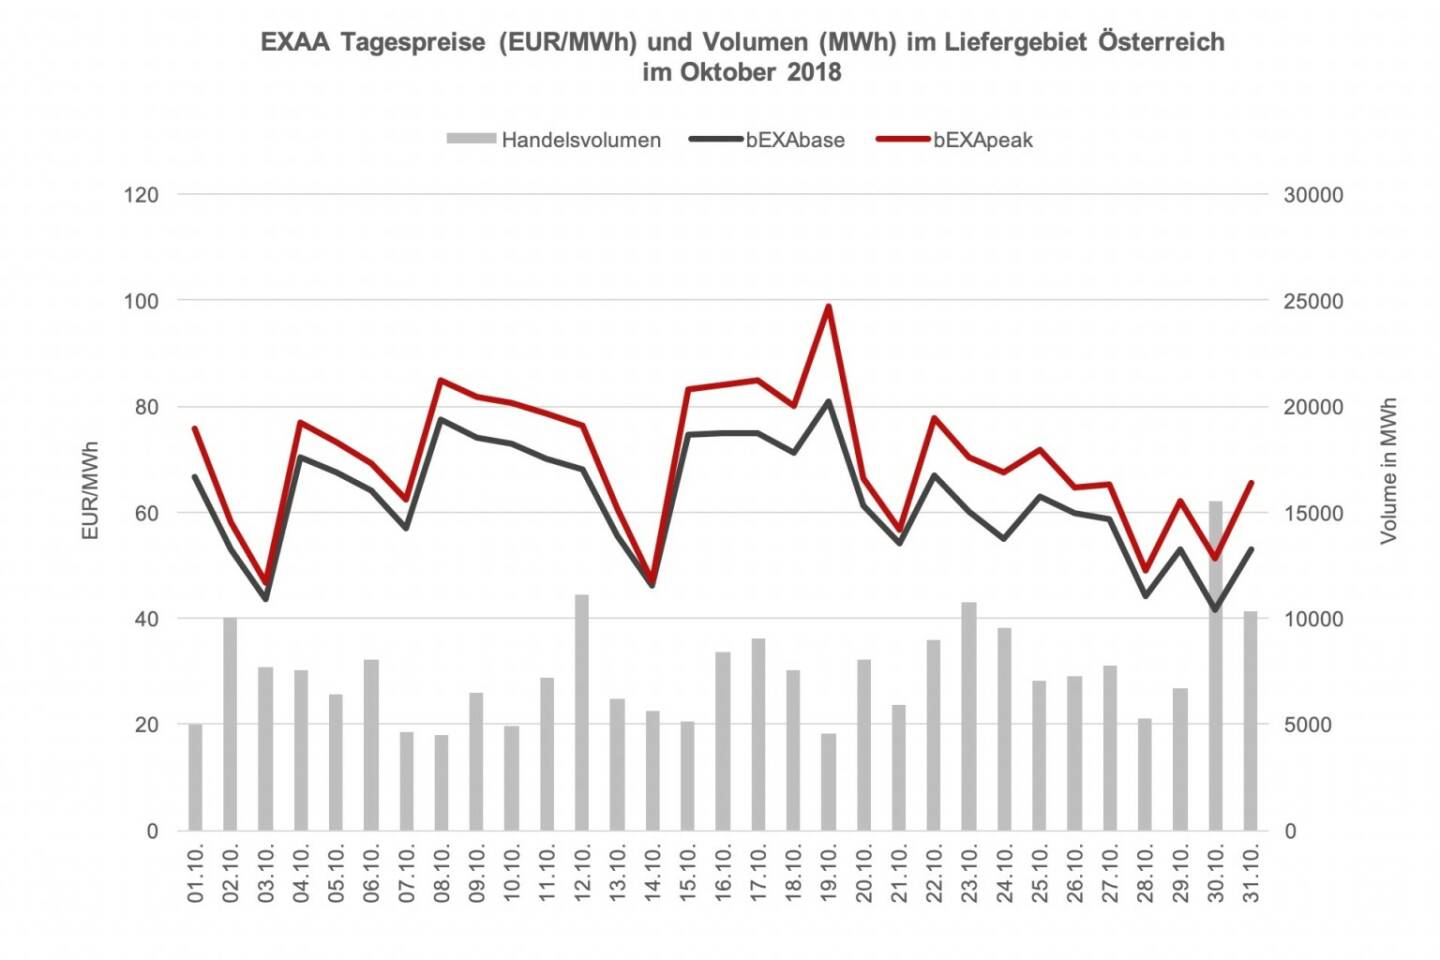 EXAA Tagespreise (EUR/MWh) und Volumen (MWh) im Liefergebiet Österreich  
im Oktober 2018